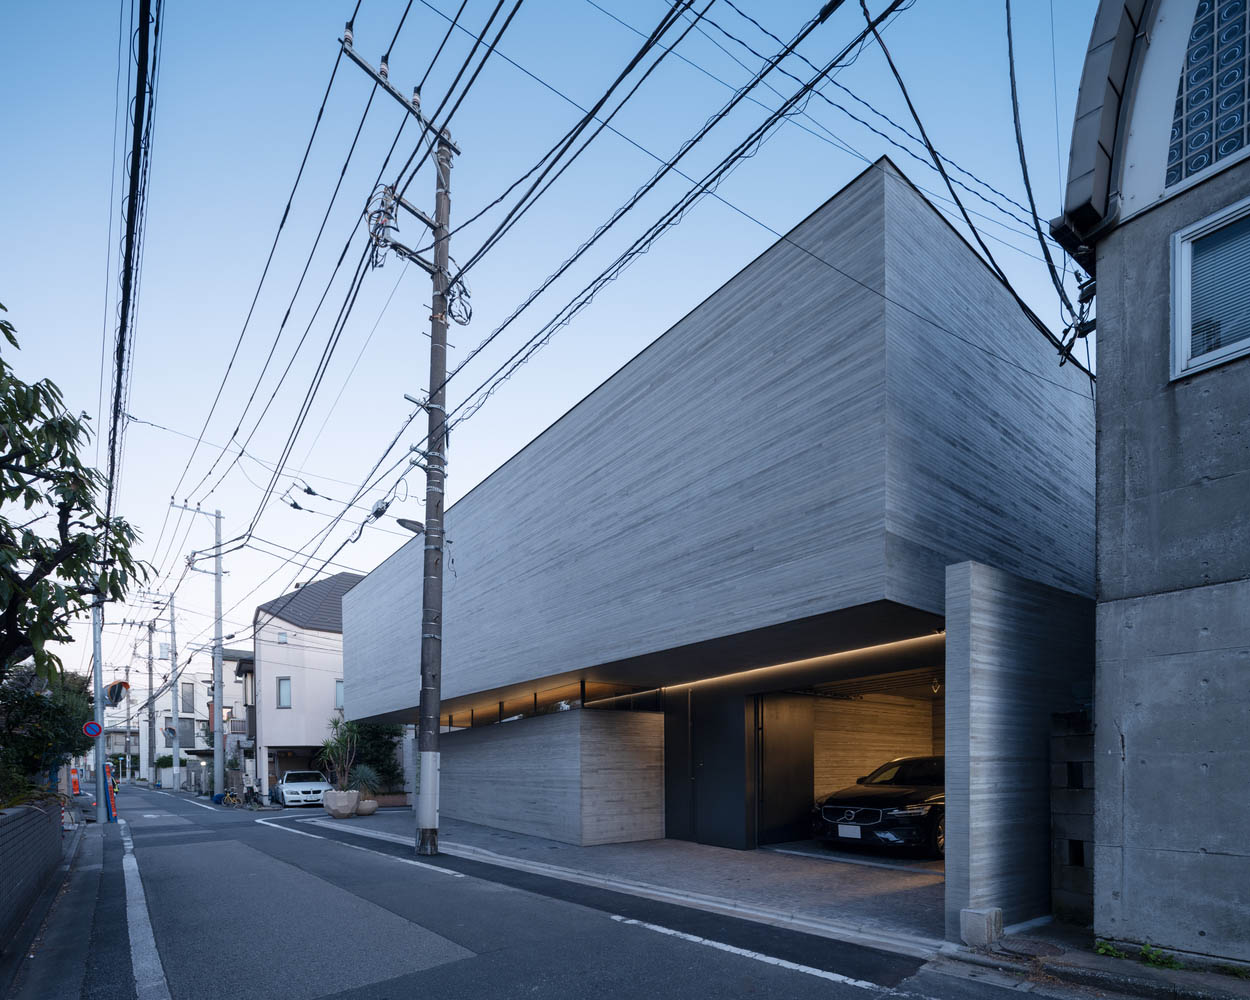 住宅设计,200㎡庭院住宅,APOLLO Architects & Associates,APOLLO,东京住宅设计,国外住宅设计案例